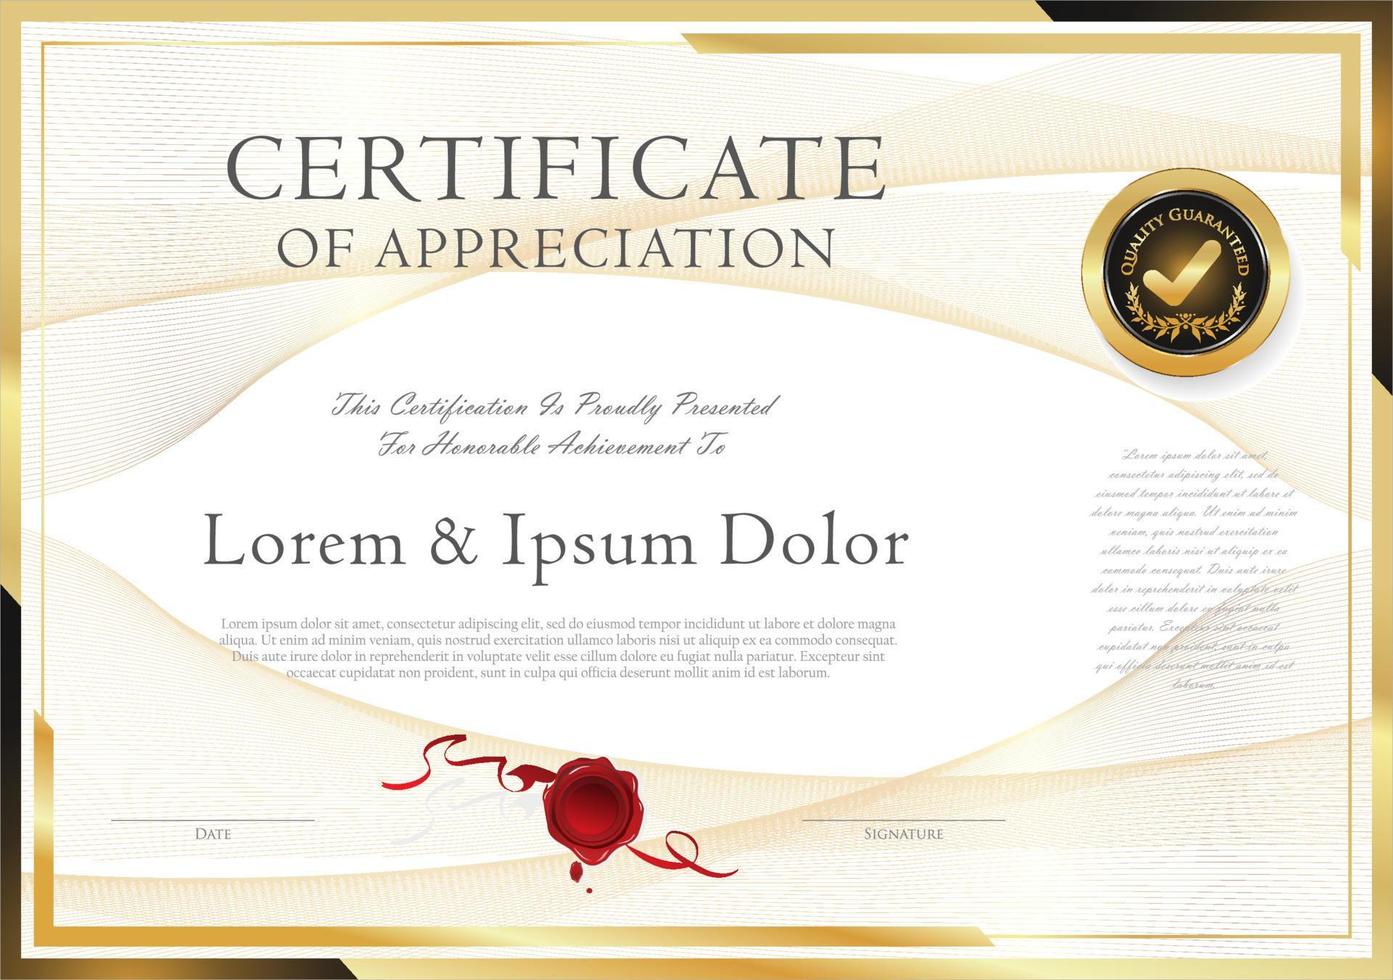 certificaat of diploma van voltooiing ontwerp sjabloon wit achtergrond vector illustratie